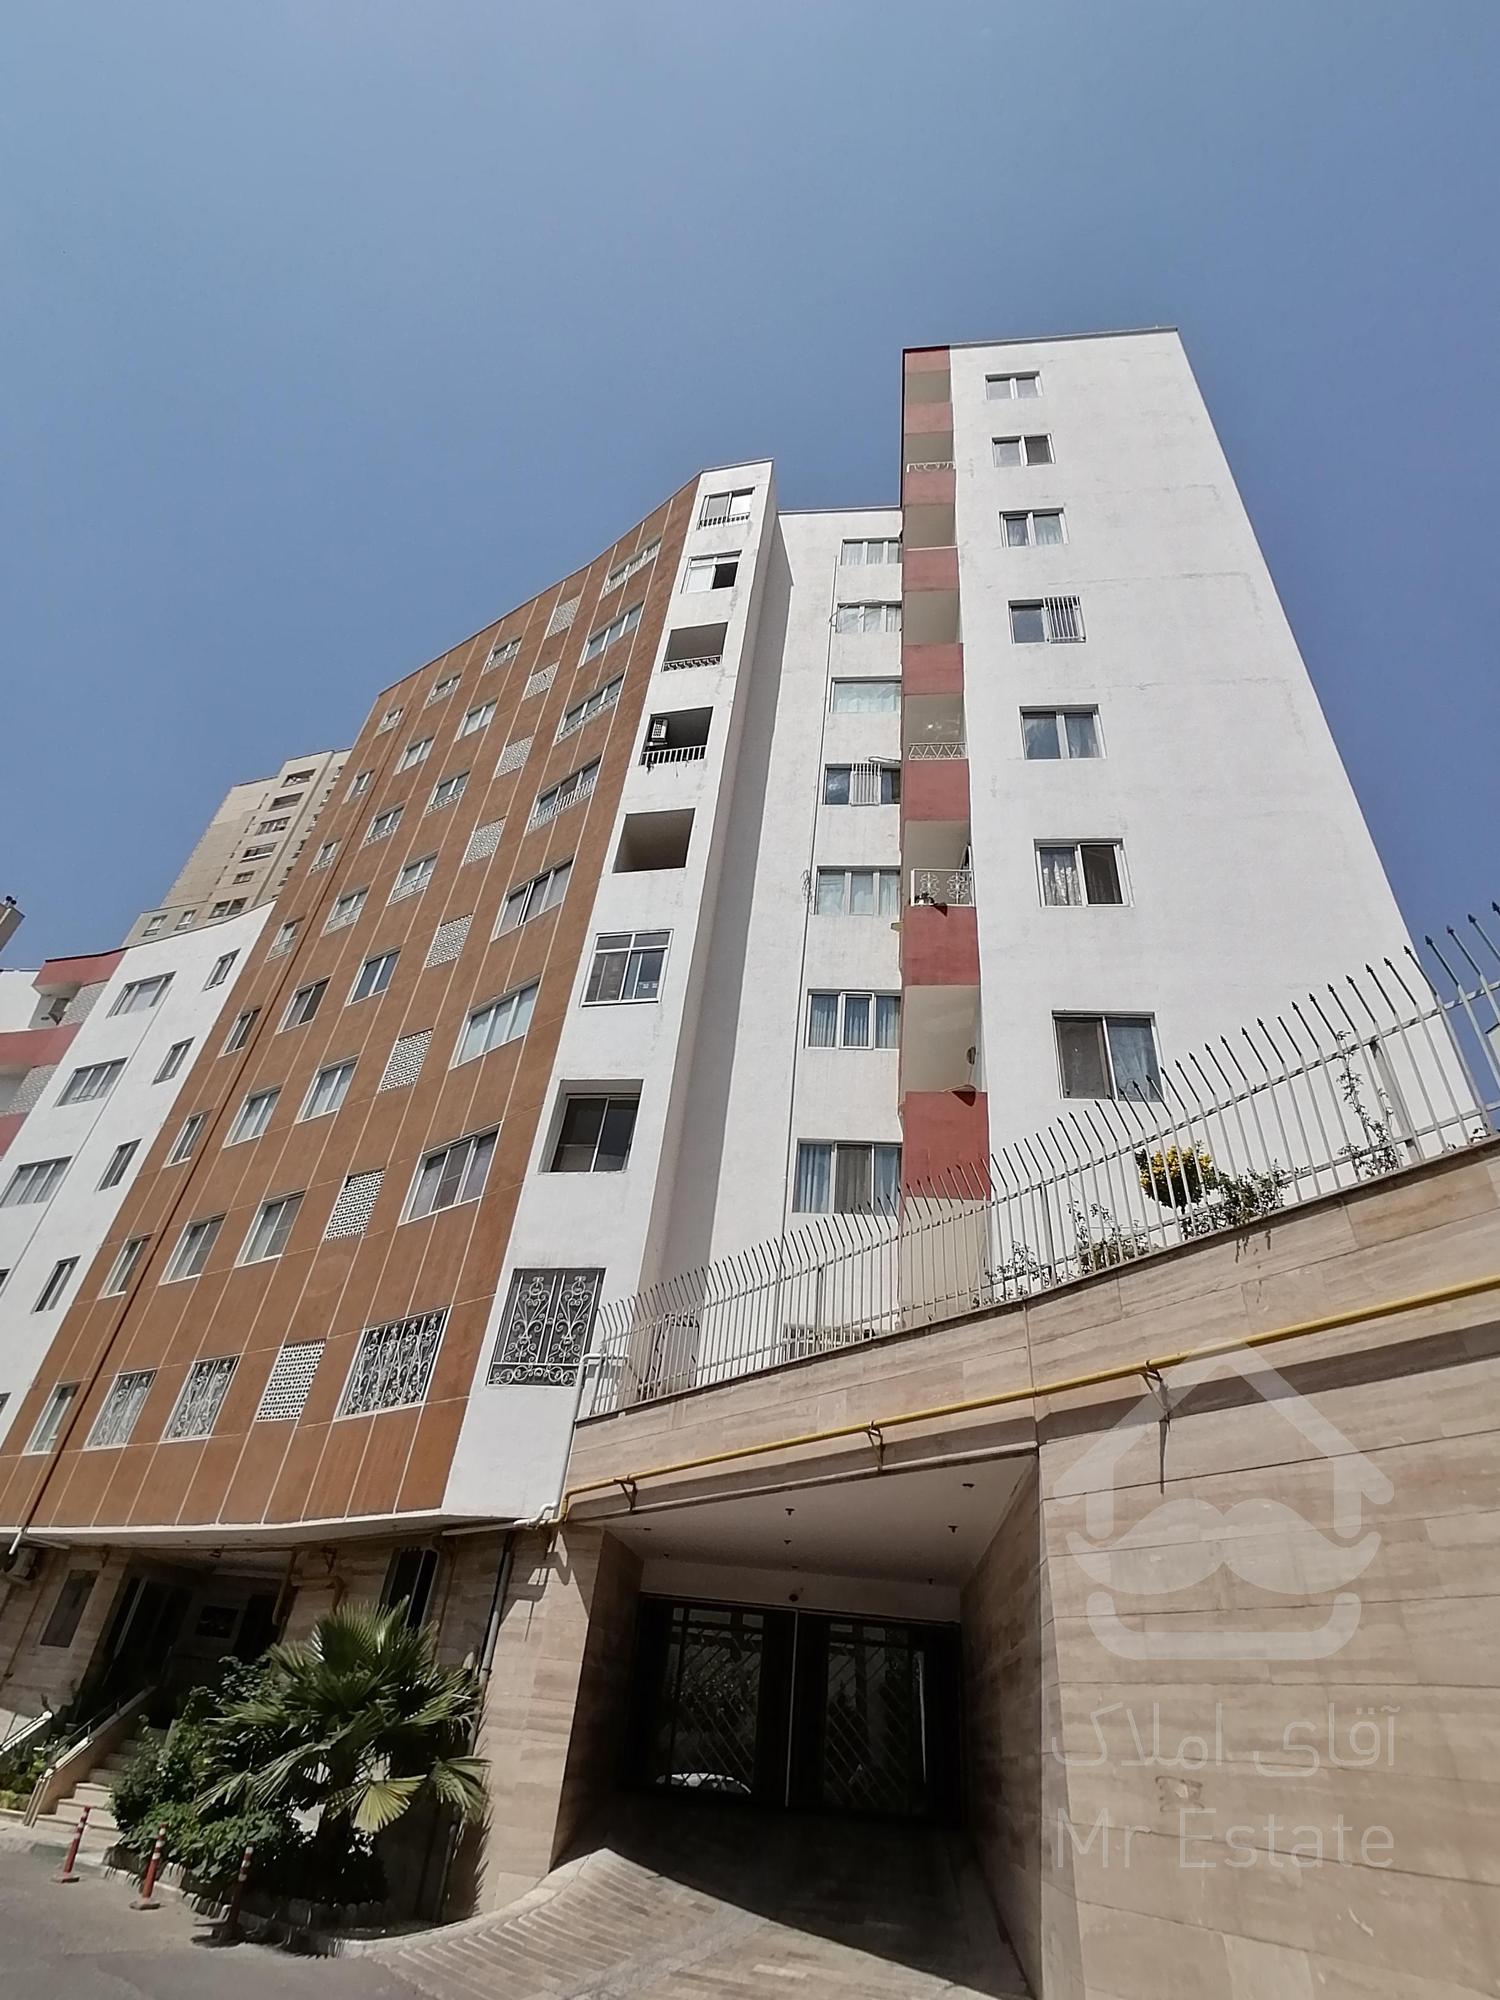 پیش فروش آپارتمان 100متری در منطقه 22 تهران (چیتگر) به صورت وام و اقساط